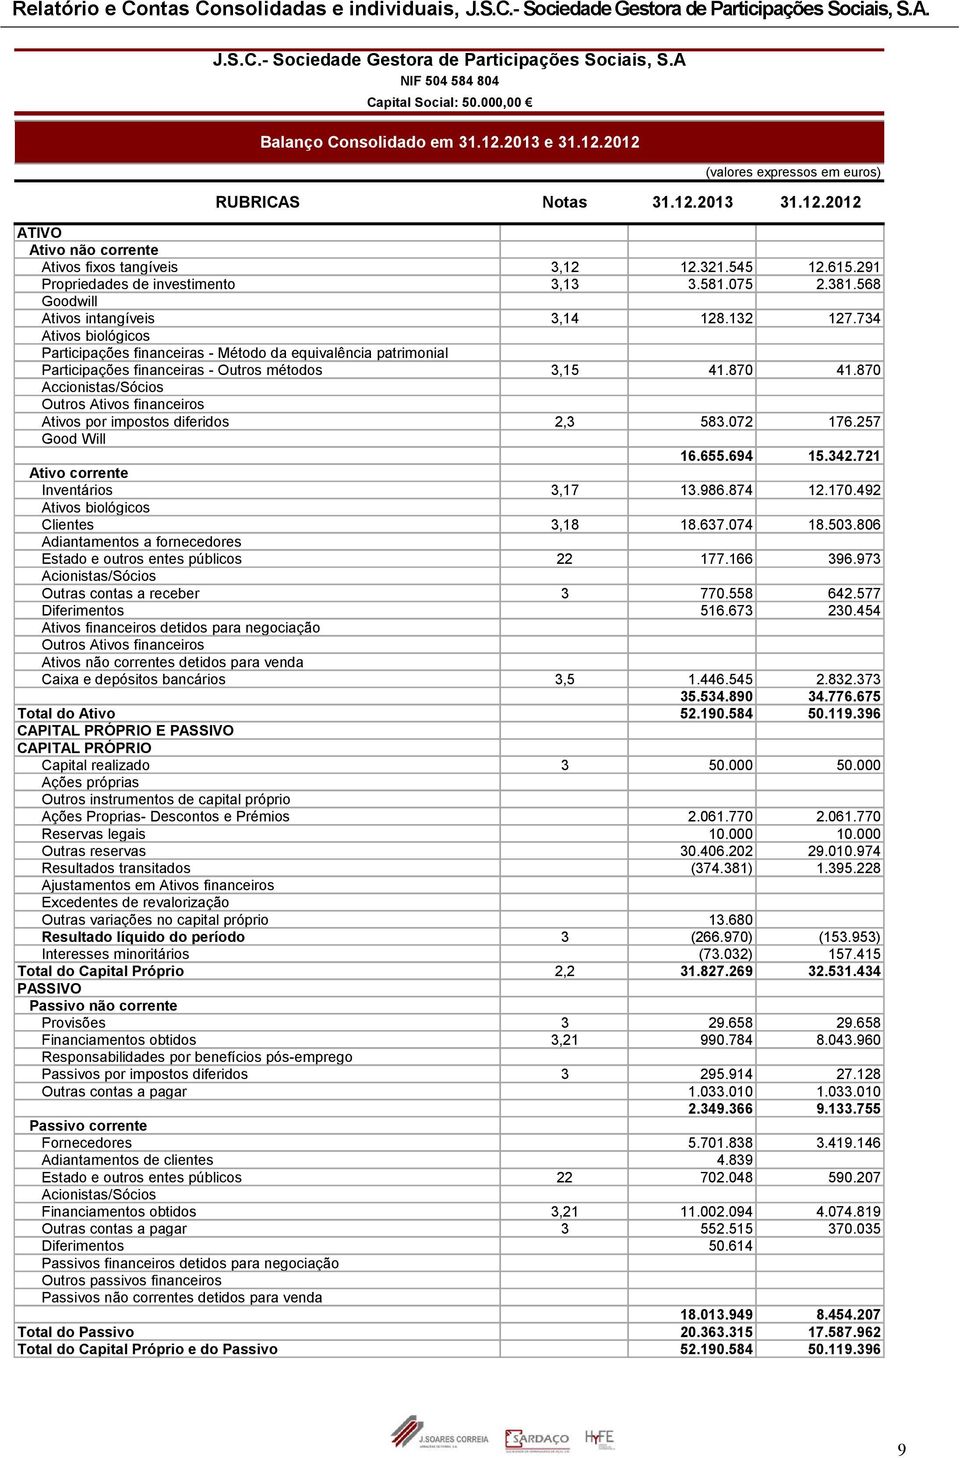 734 Ativos biológicos Participações financeiras - Método da equivalência patrimonial Participações financeiras - Outros métodos 3,15 41.870 41.